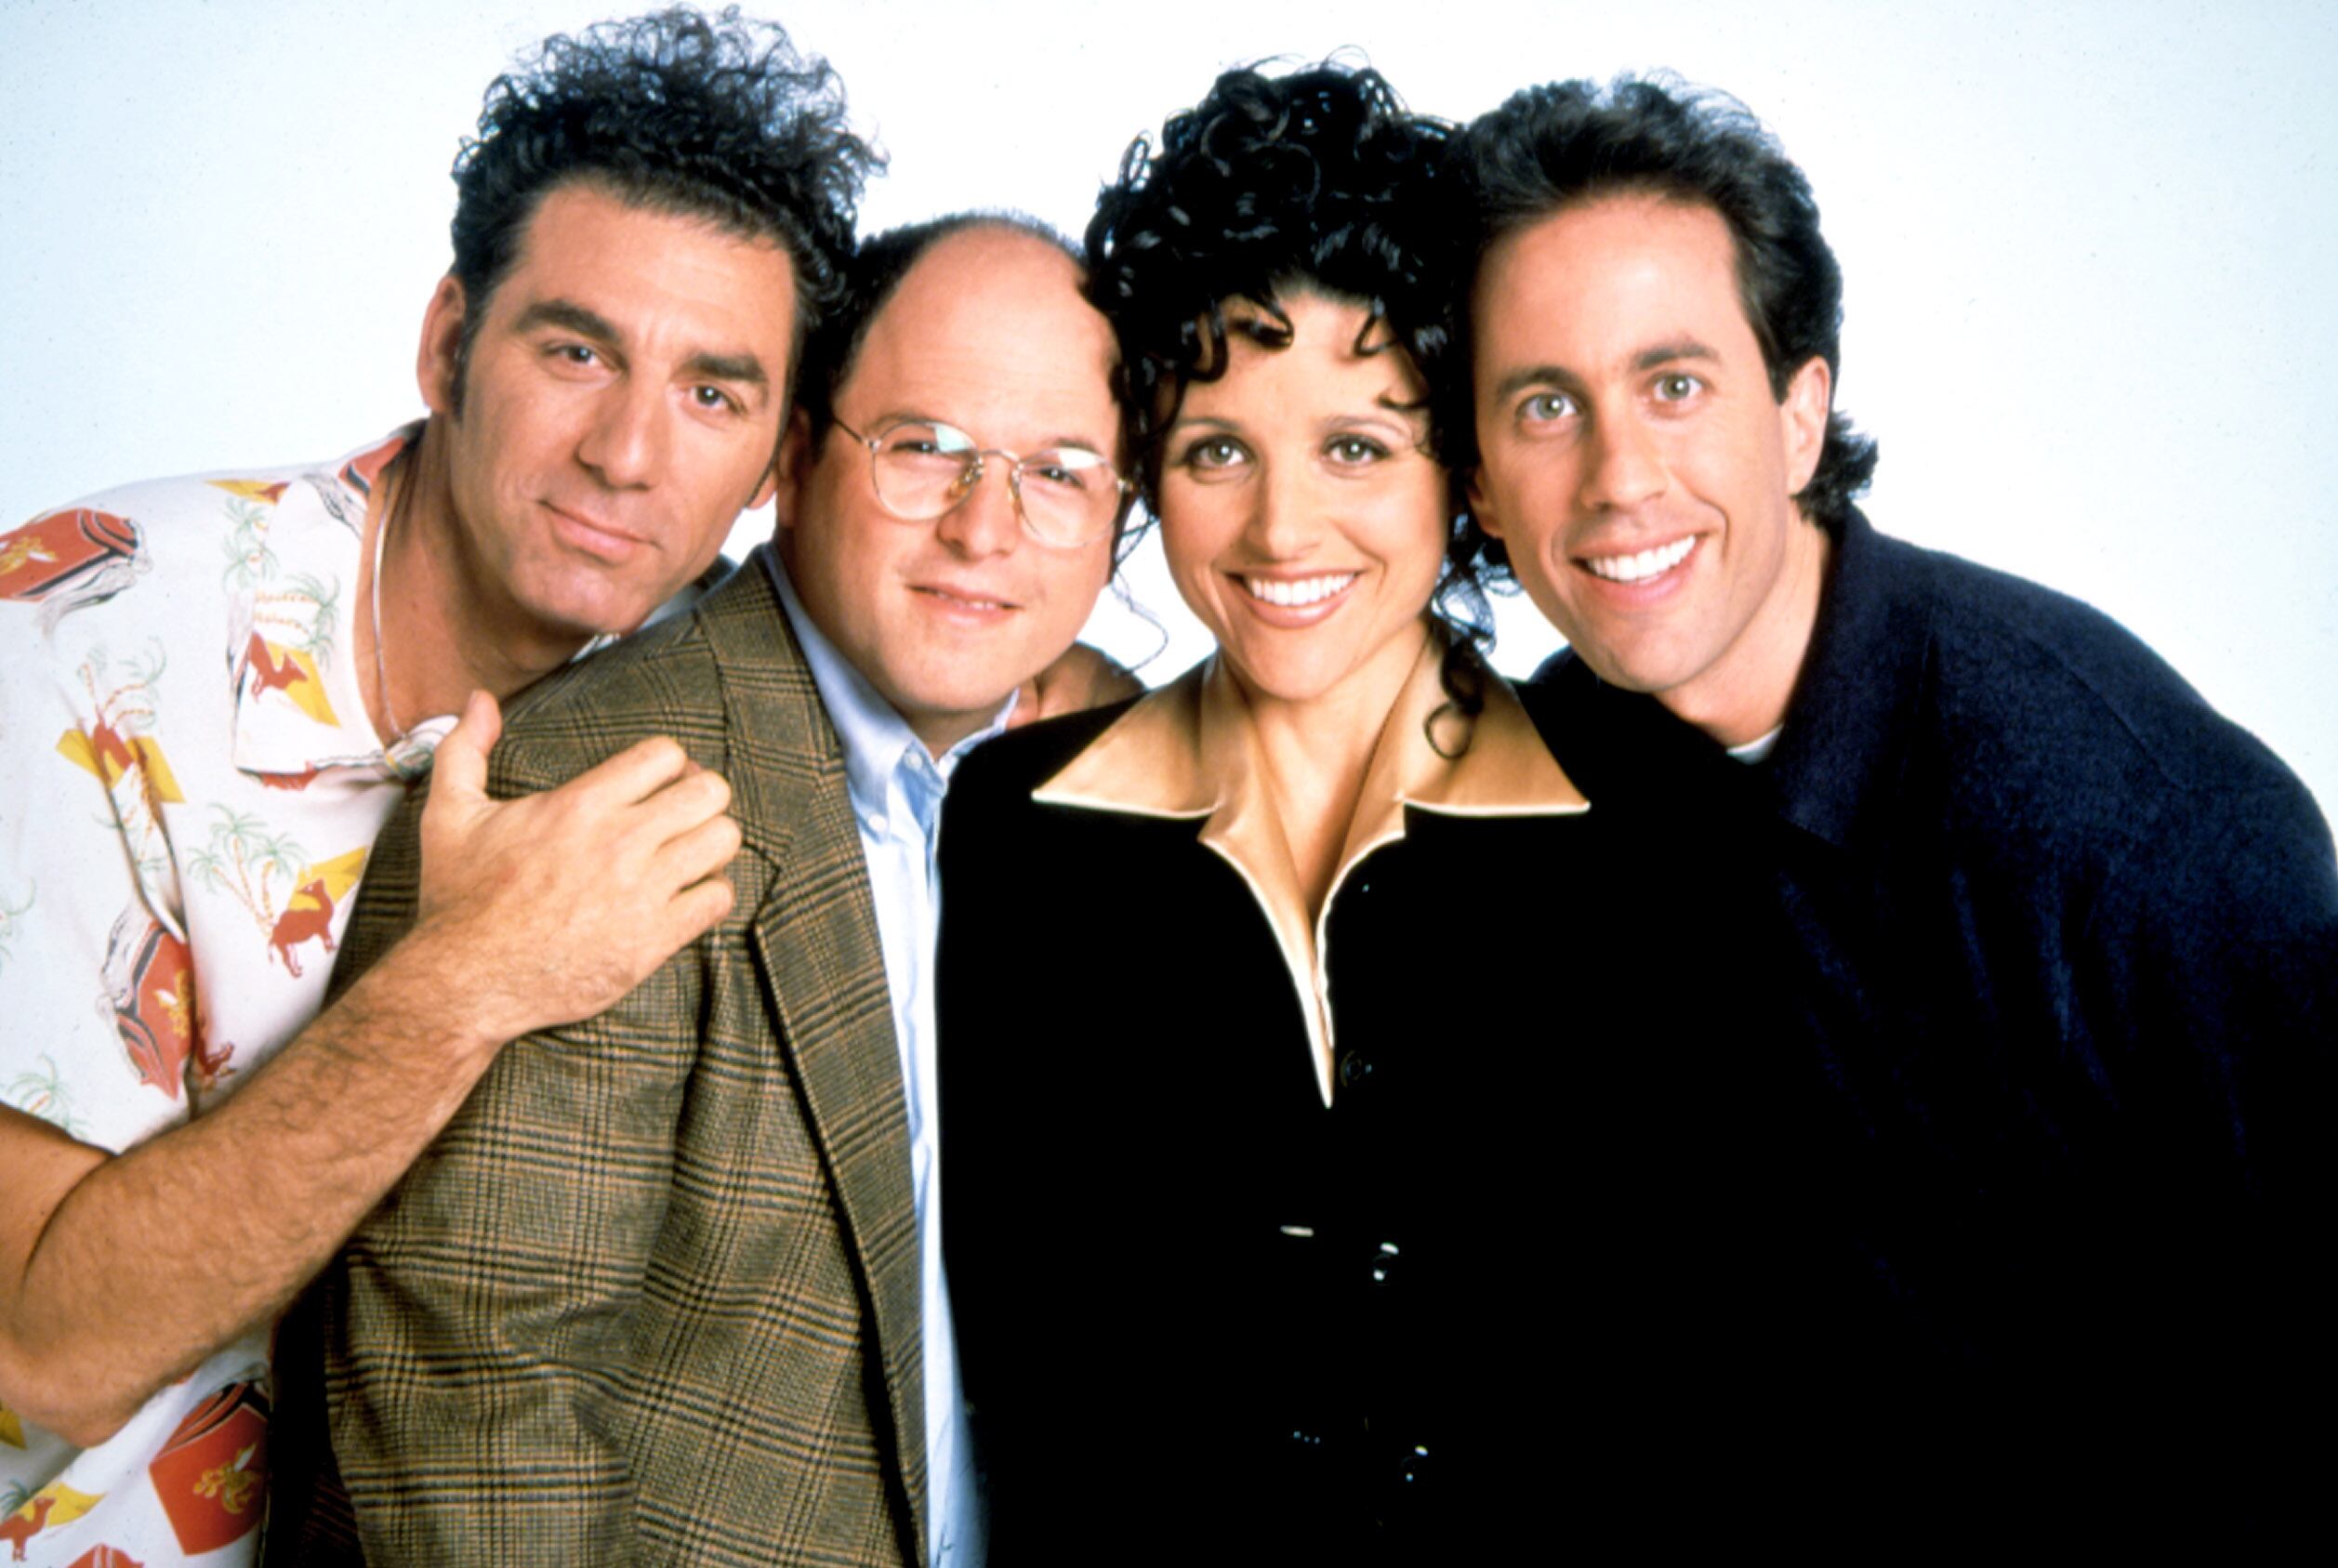 De izquierda a derecha: Michael Richards, Jason Alexander, Julia Louis-Dreyfus y Jerry Seinfeld, los actores principales de la serie 'Seinfeld' que se emitió entre 1989 y 1998.